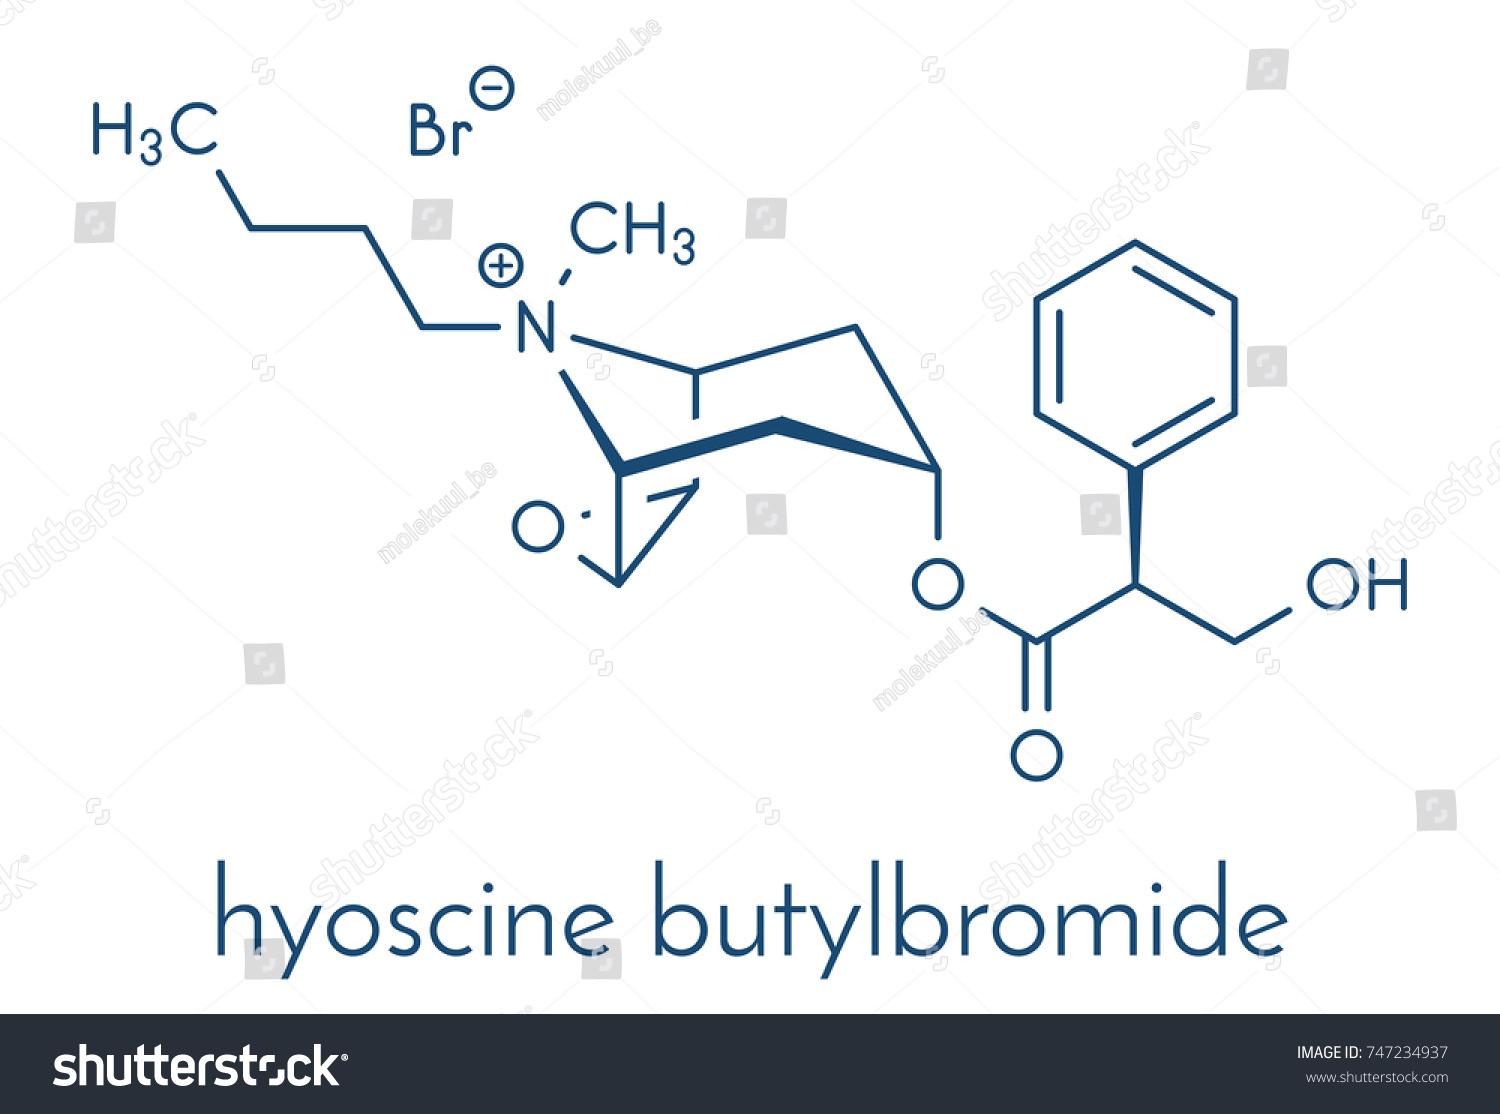 Butylbromide hyoscine Hyoscine butylbromide